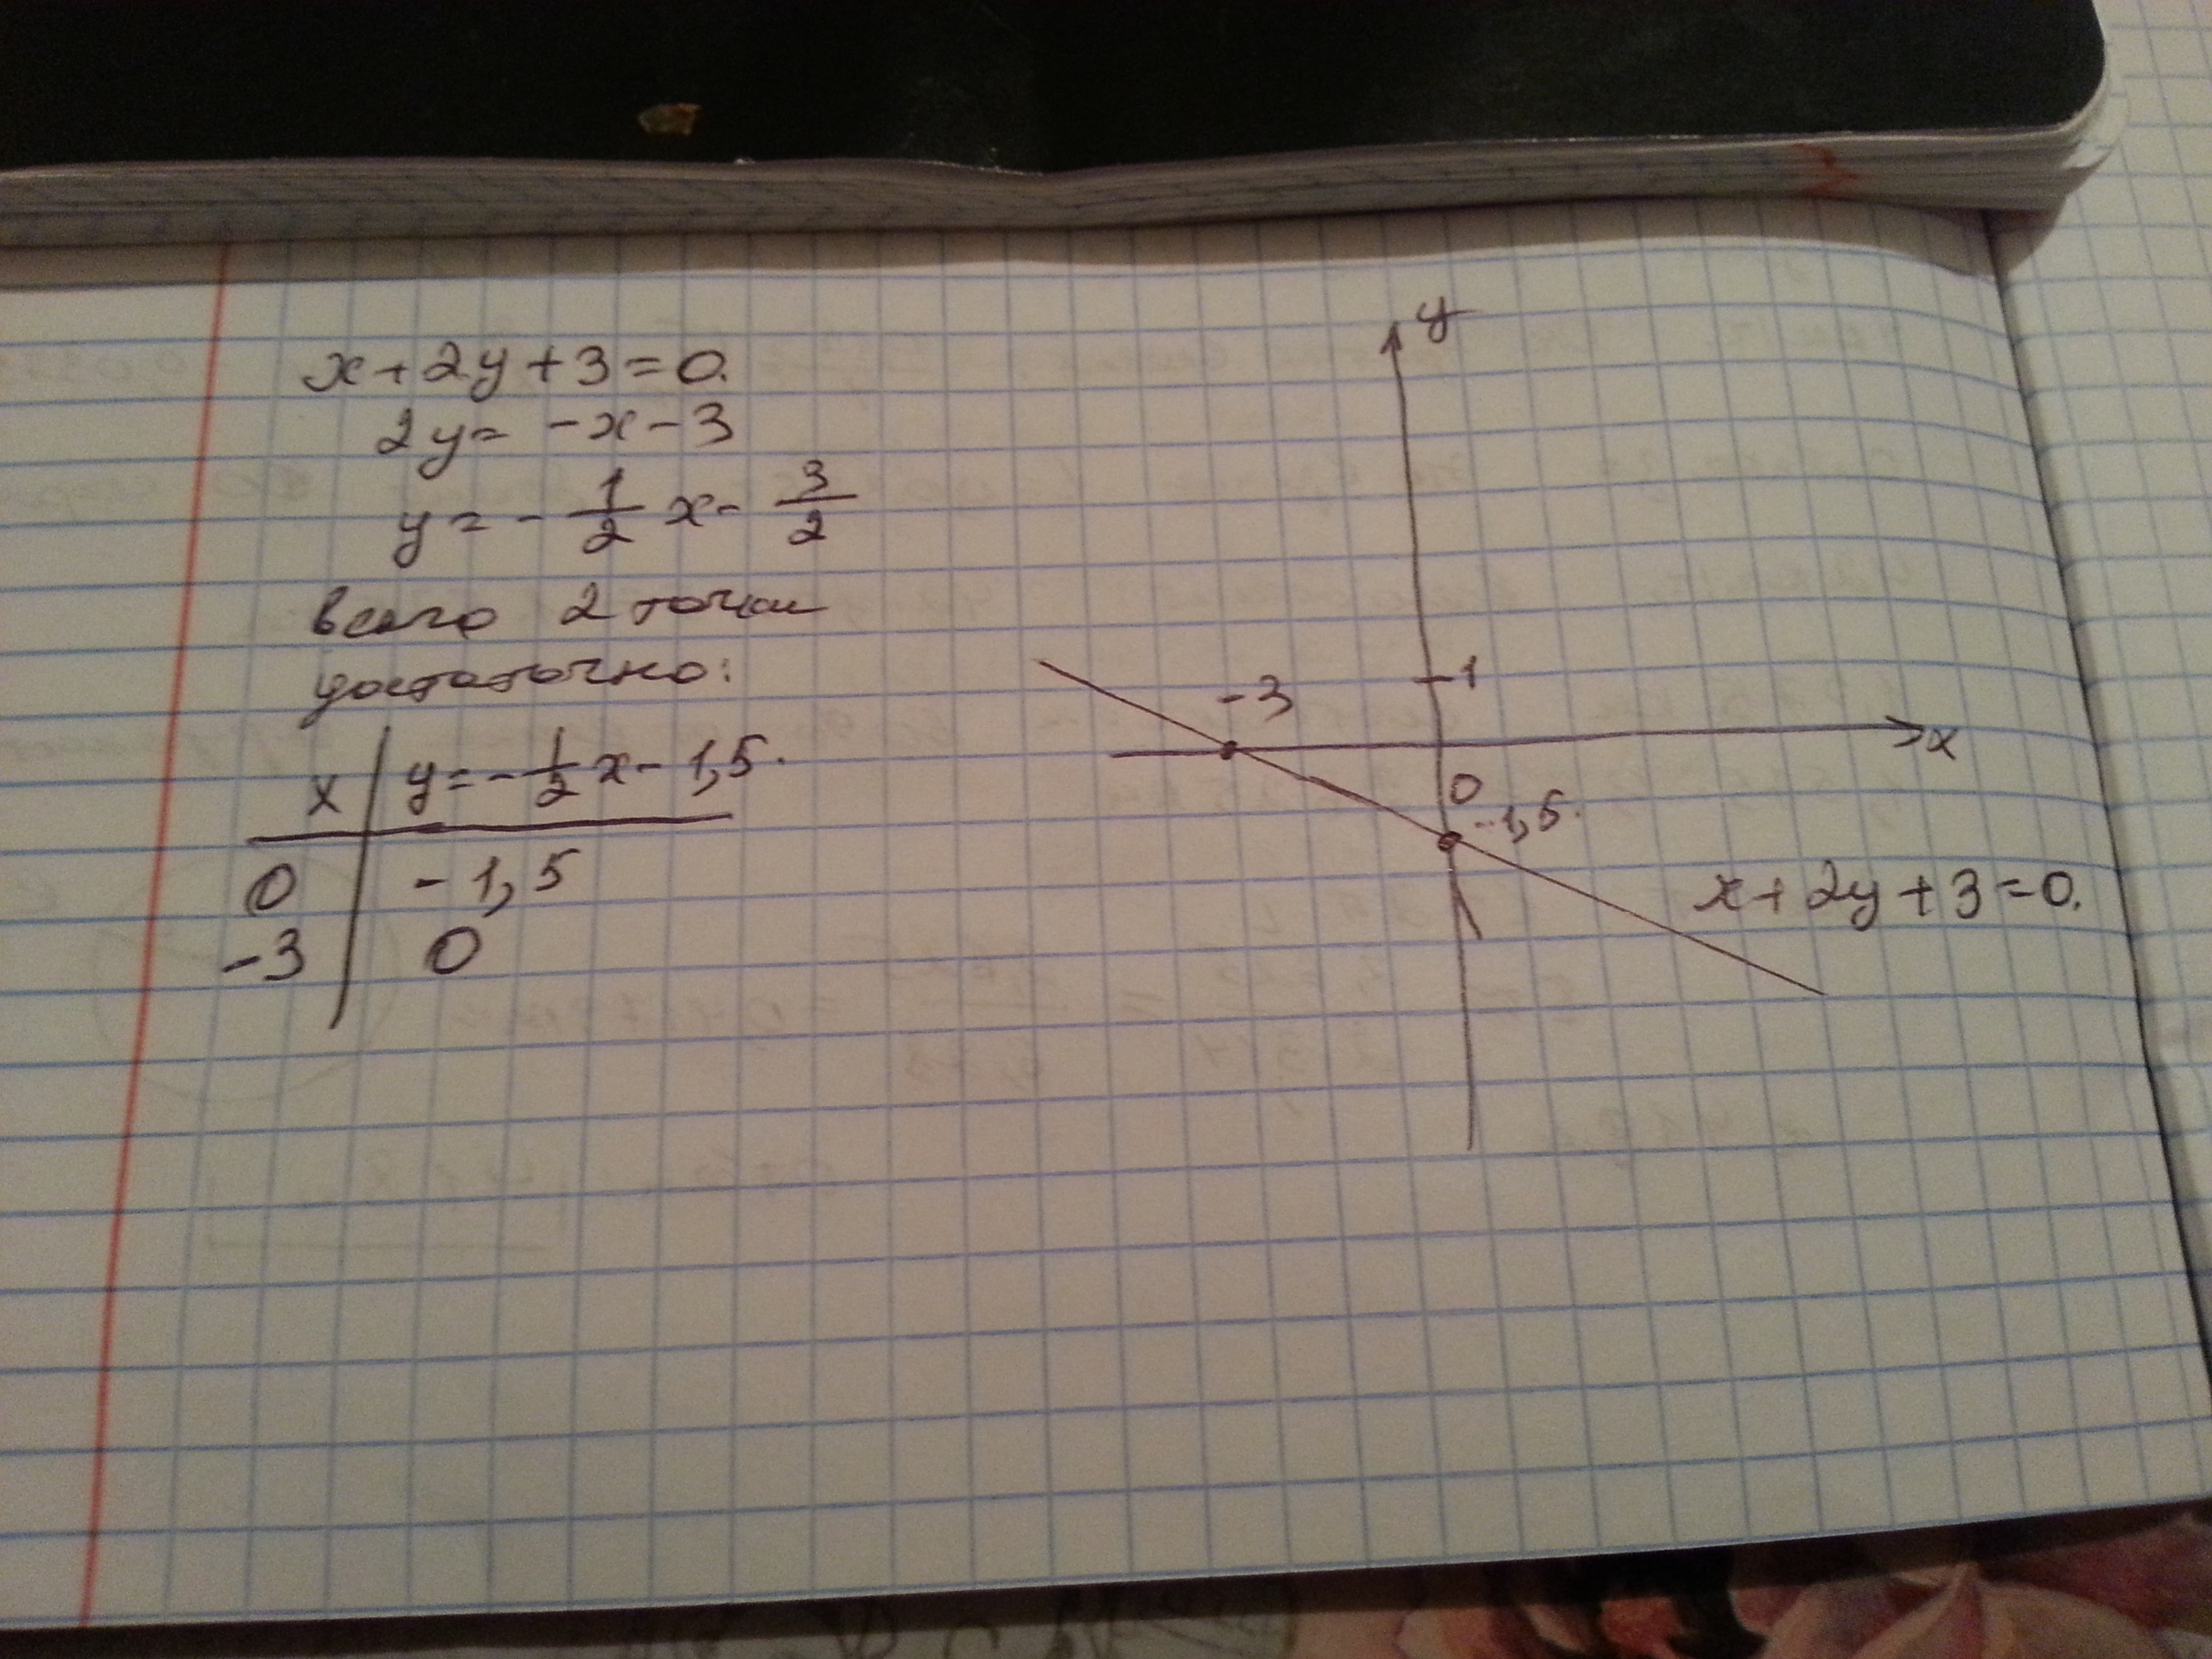 3х 2у 4 0. Построить прямую заданную уравнением. 3х+2=0. Начертите прямую заданную уравнением. Начертите прямую заданную уравнением у 3 х -2.